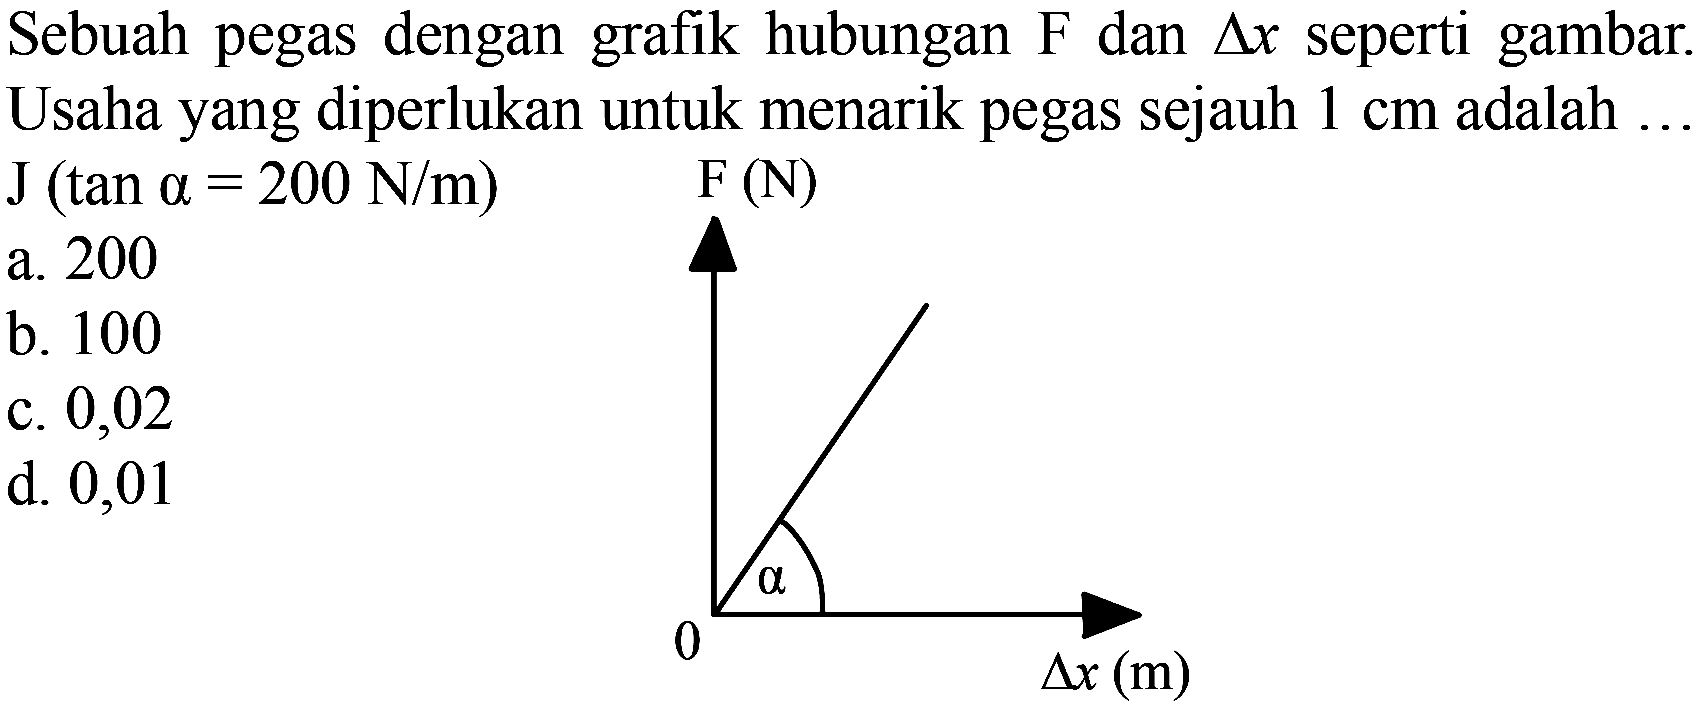 Sebuah pegas dengan grafik hubungan  F  dan  segitiga x  seperti gambar. Usaha yang diperlukan untuk menarik pegas sejauh  1 cm  adalah ...  J (tan a=200 N/m)  F(N) alpha 0 delta x(m)